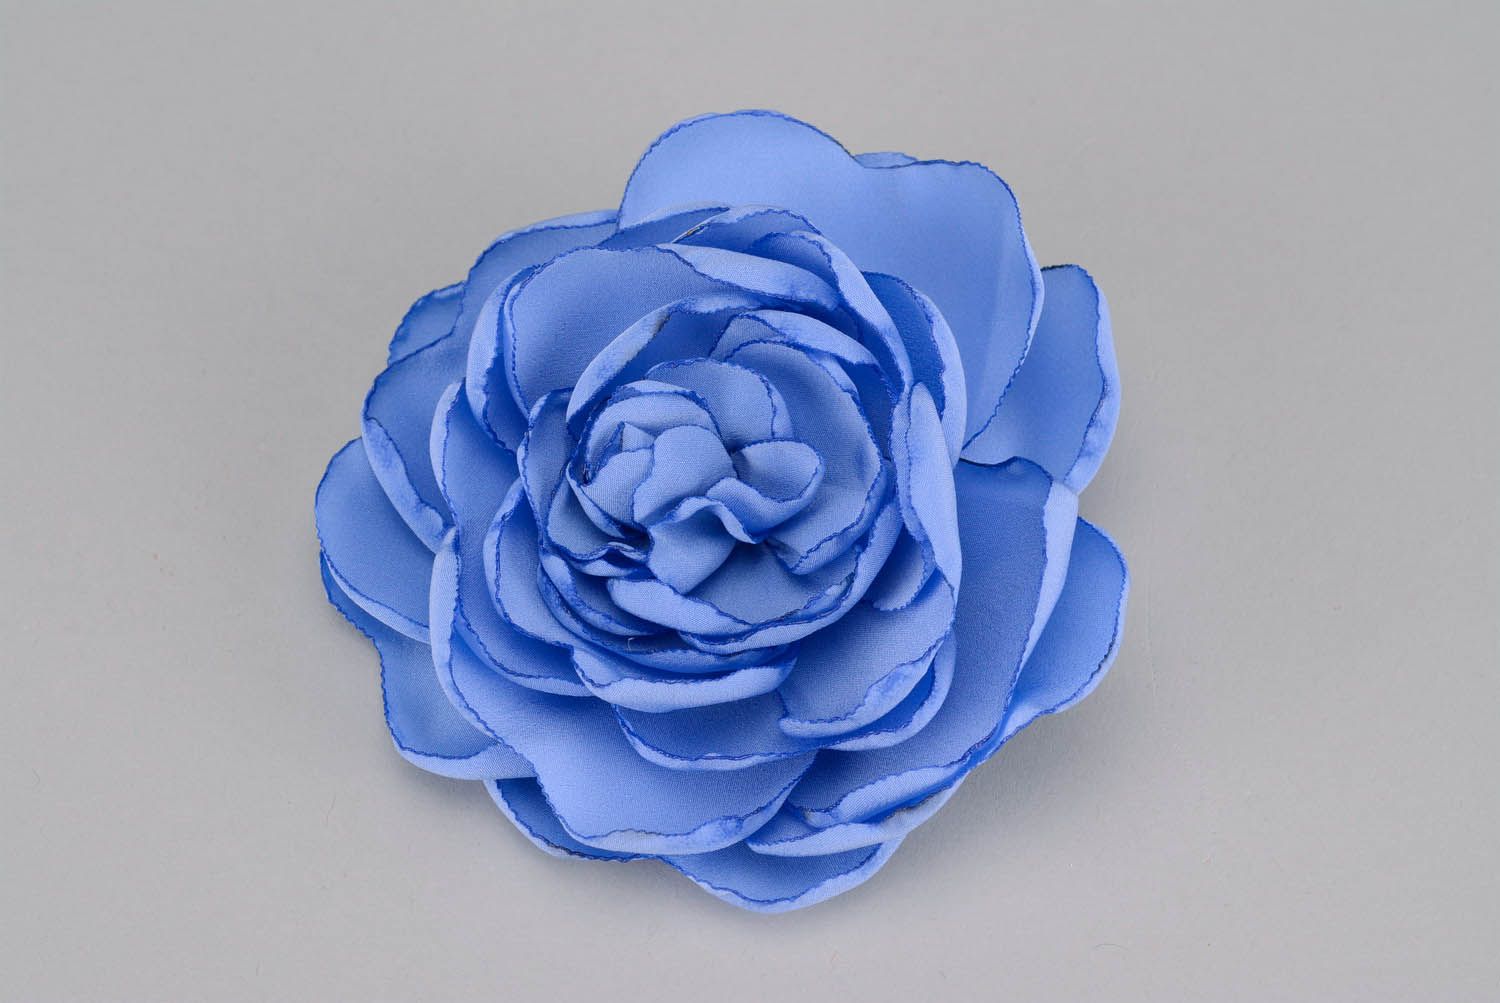 Брошь-заколка в виде синего цветка фото 1